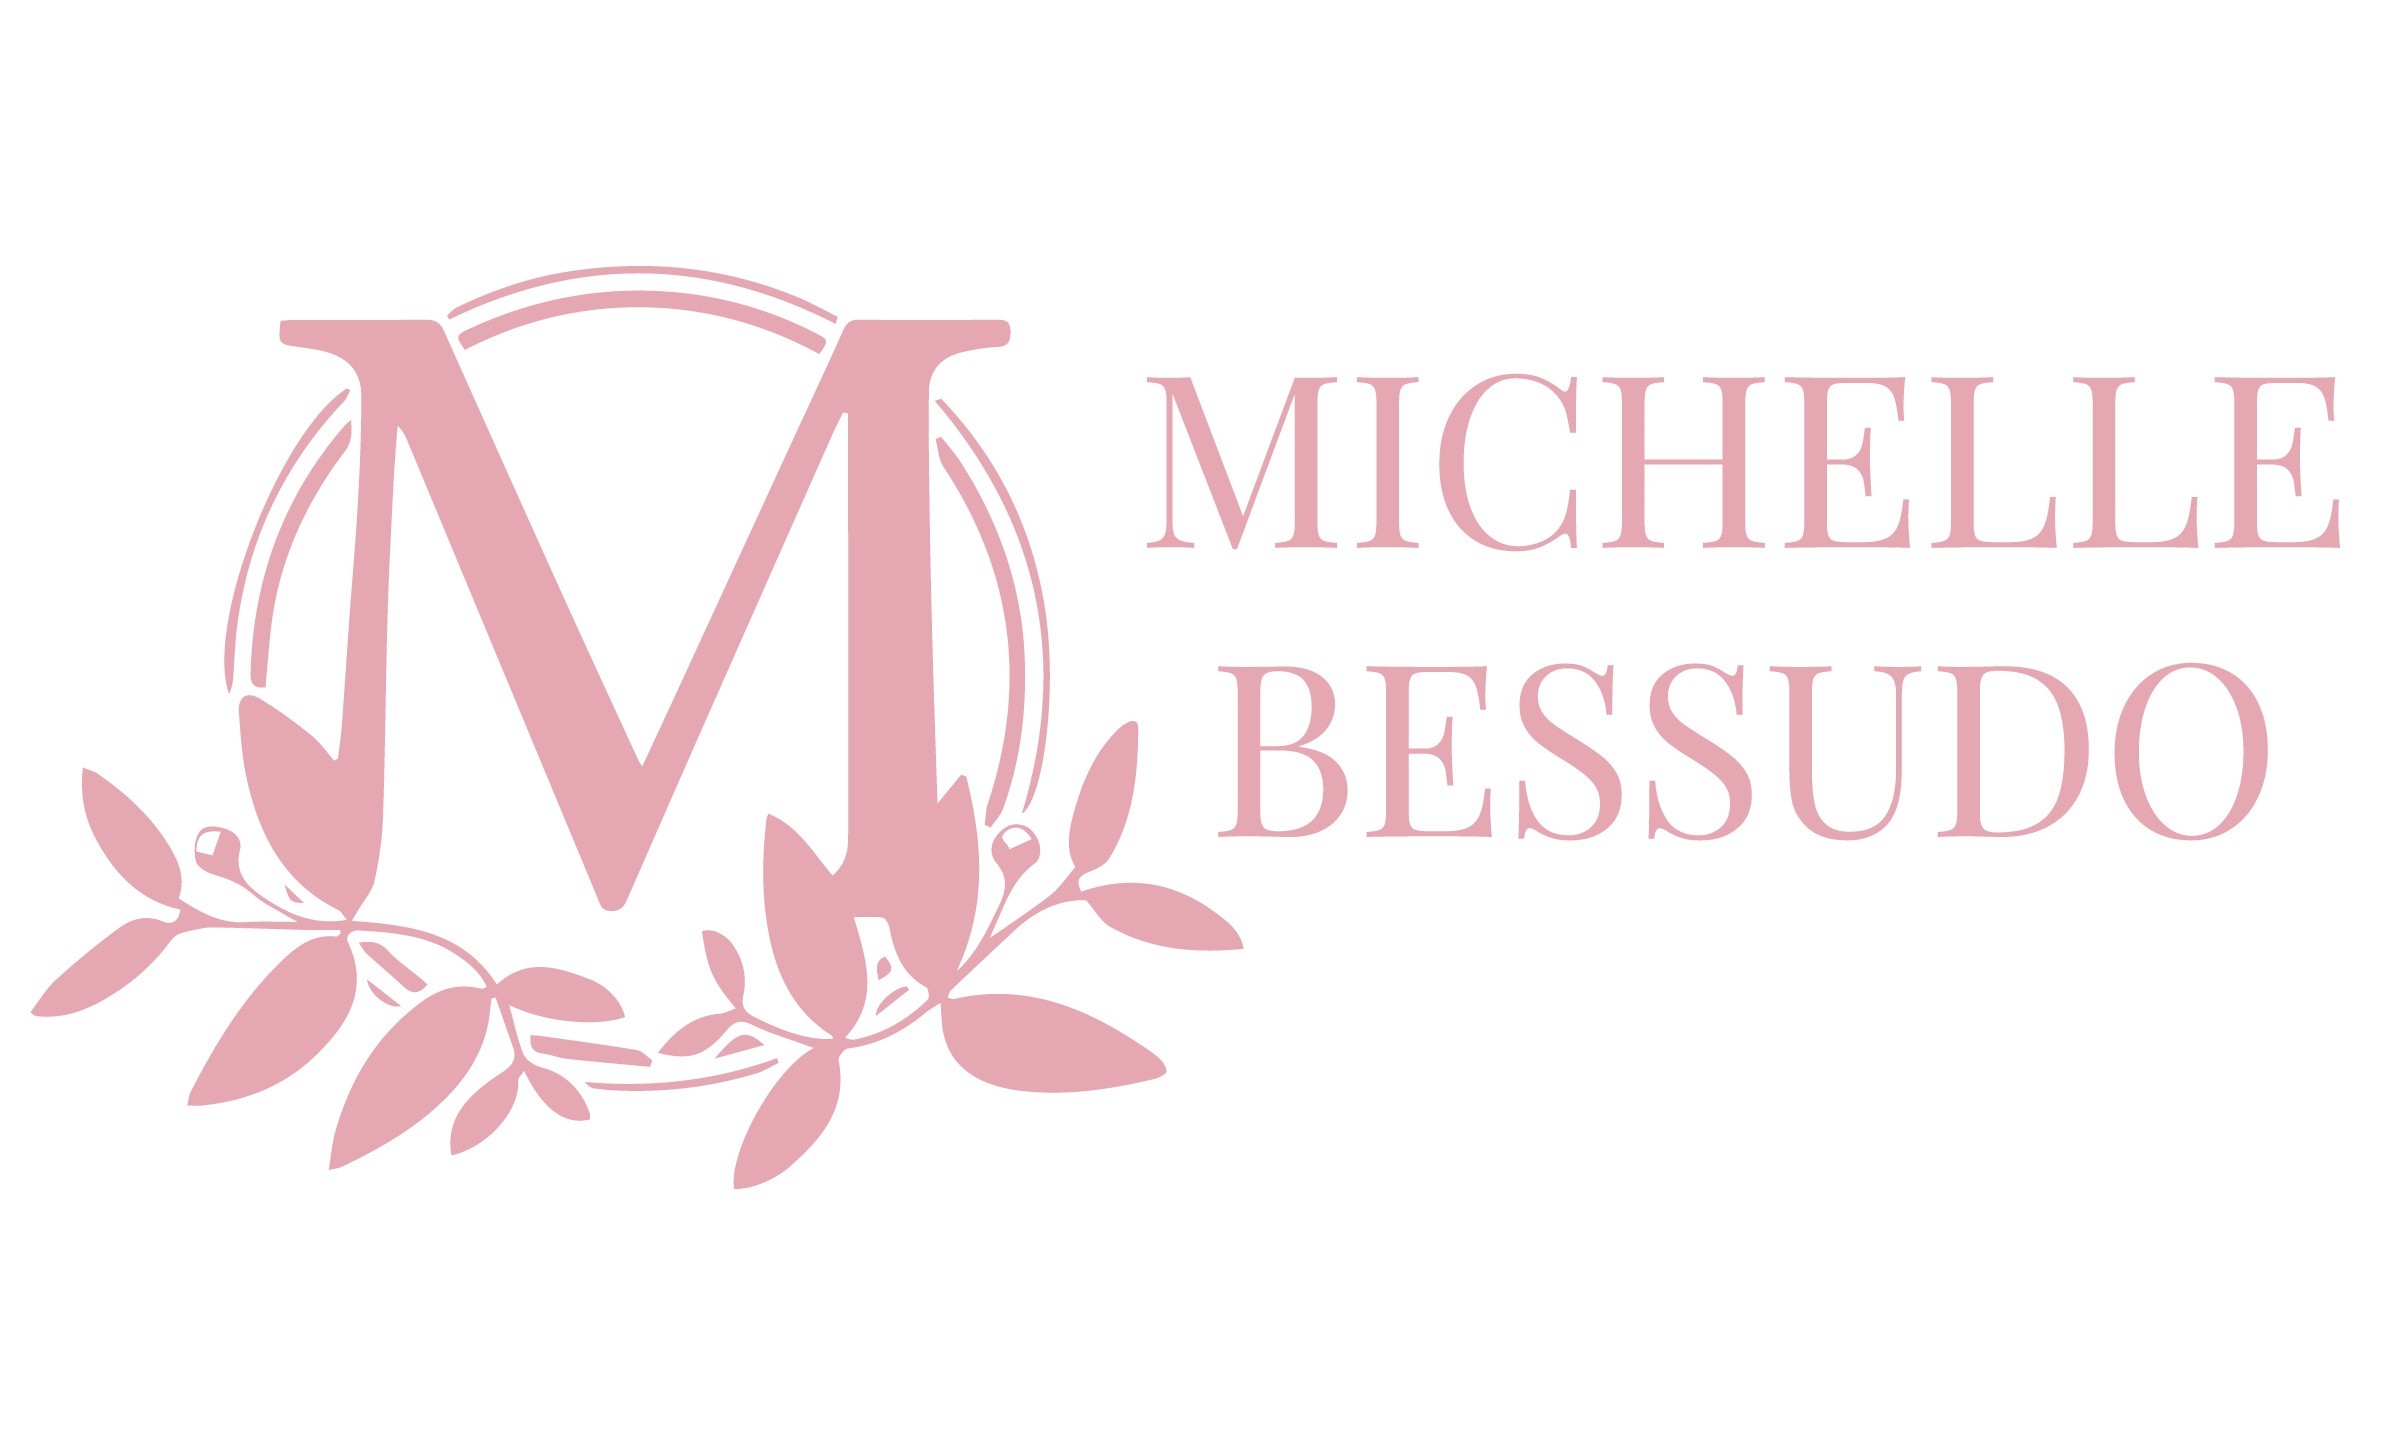 Michelle Bessudo